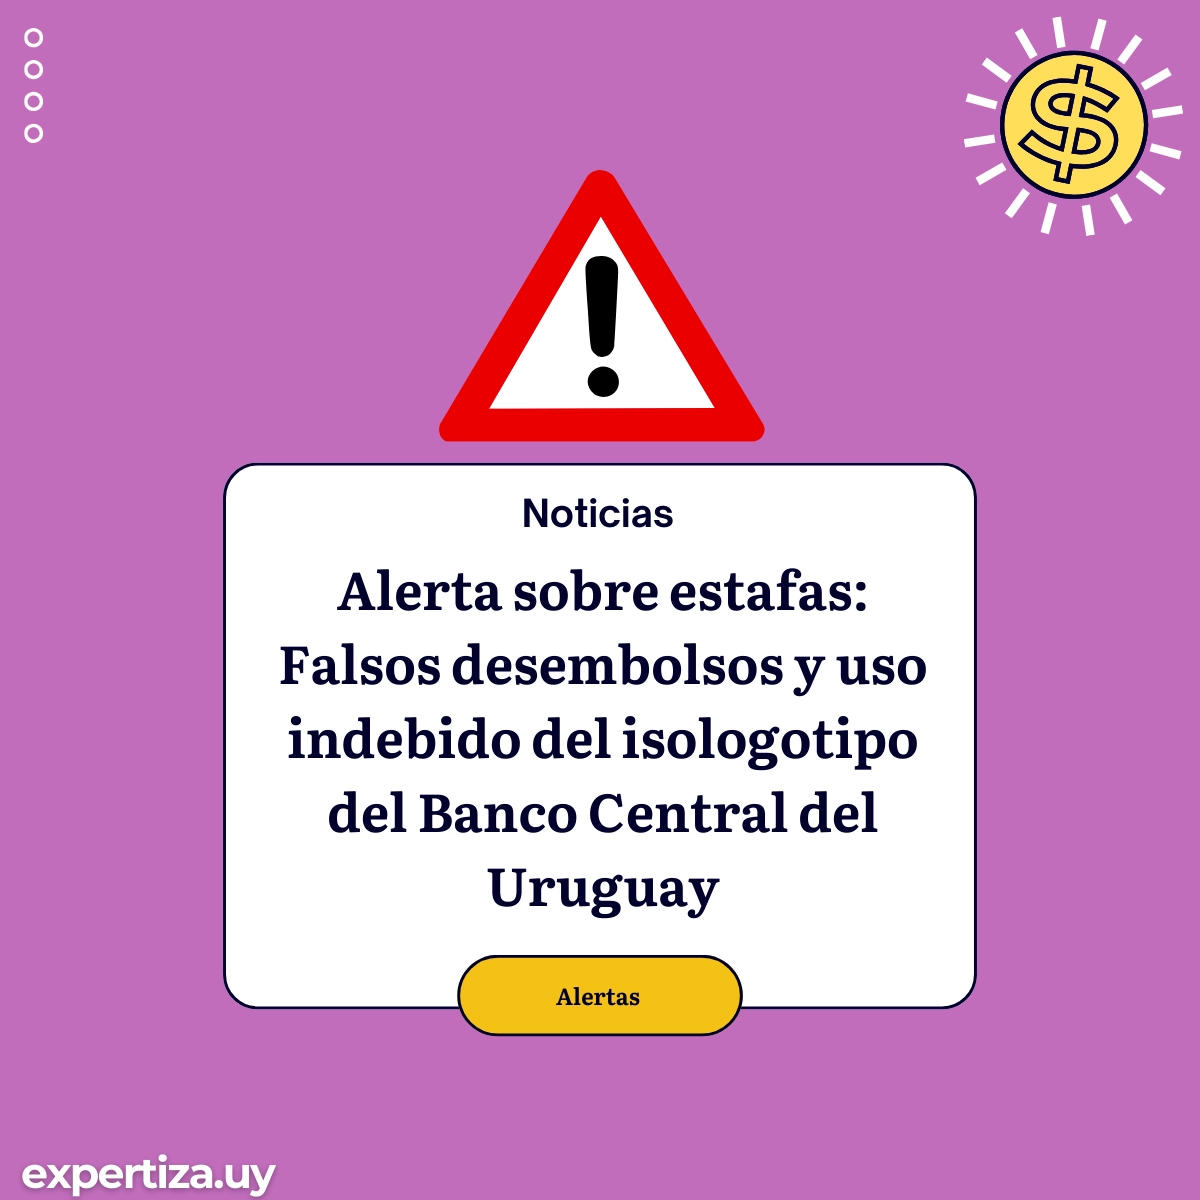 Alerta sobre estafas: Falsos desembolsos y uso indebido del isologotipo del Banco Central del Uruguay.